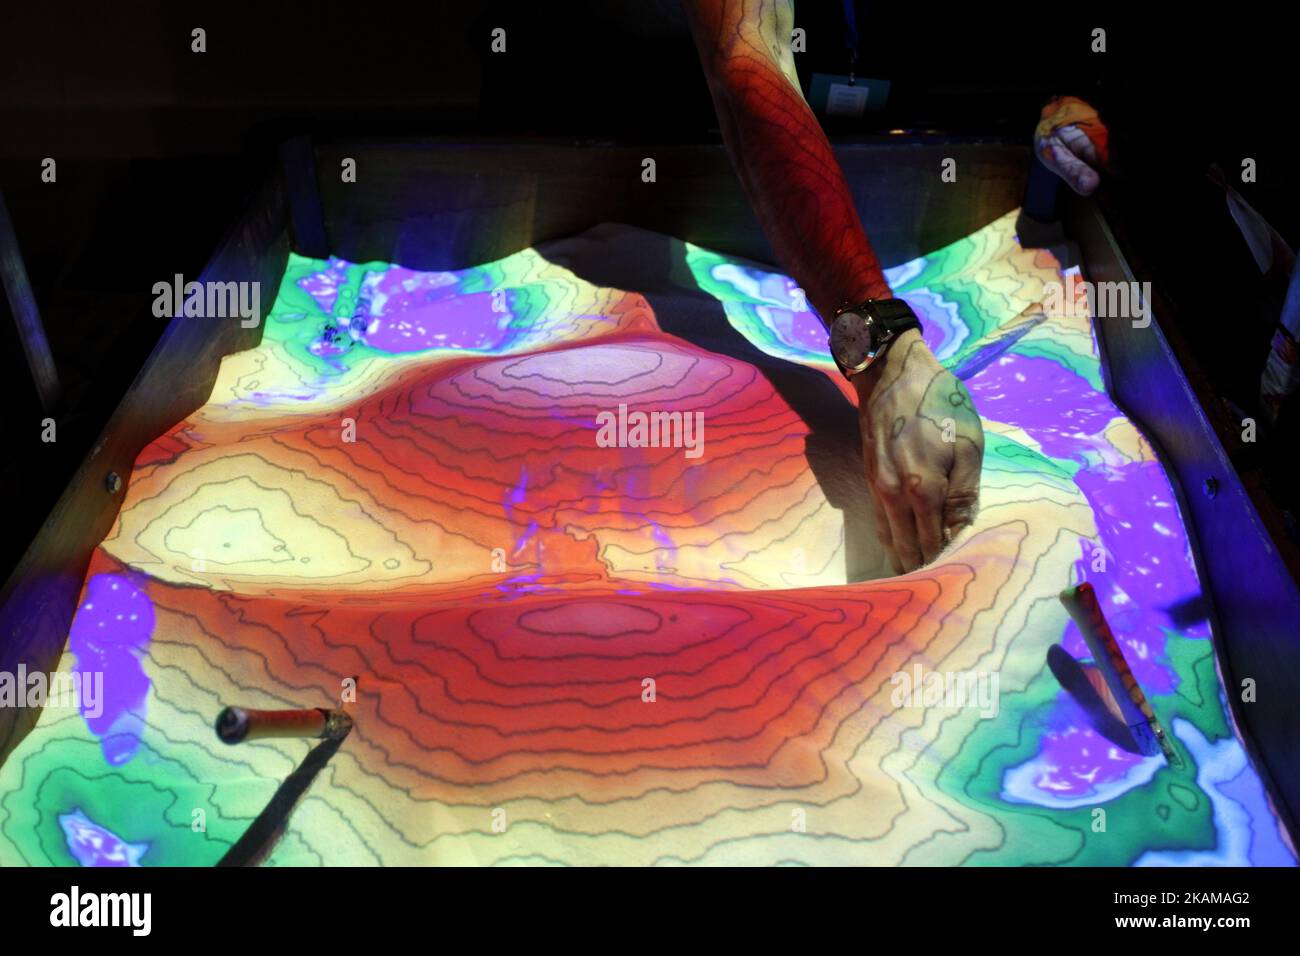 La caja de arena de realidad aumentada permite a los usuarios crear modelos  topográficos mediante la creación de arena real, que a continuación se  incrementa en tiempo real mediante un mapa en